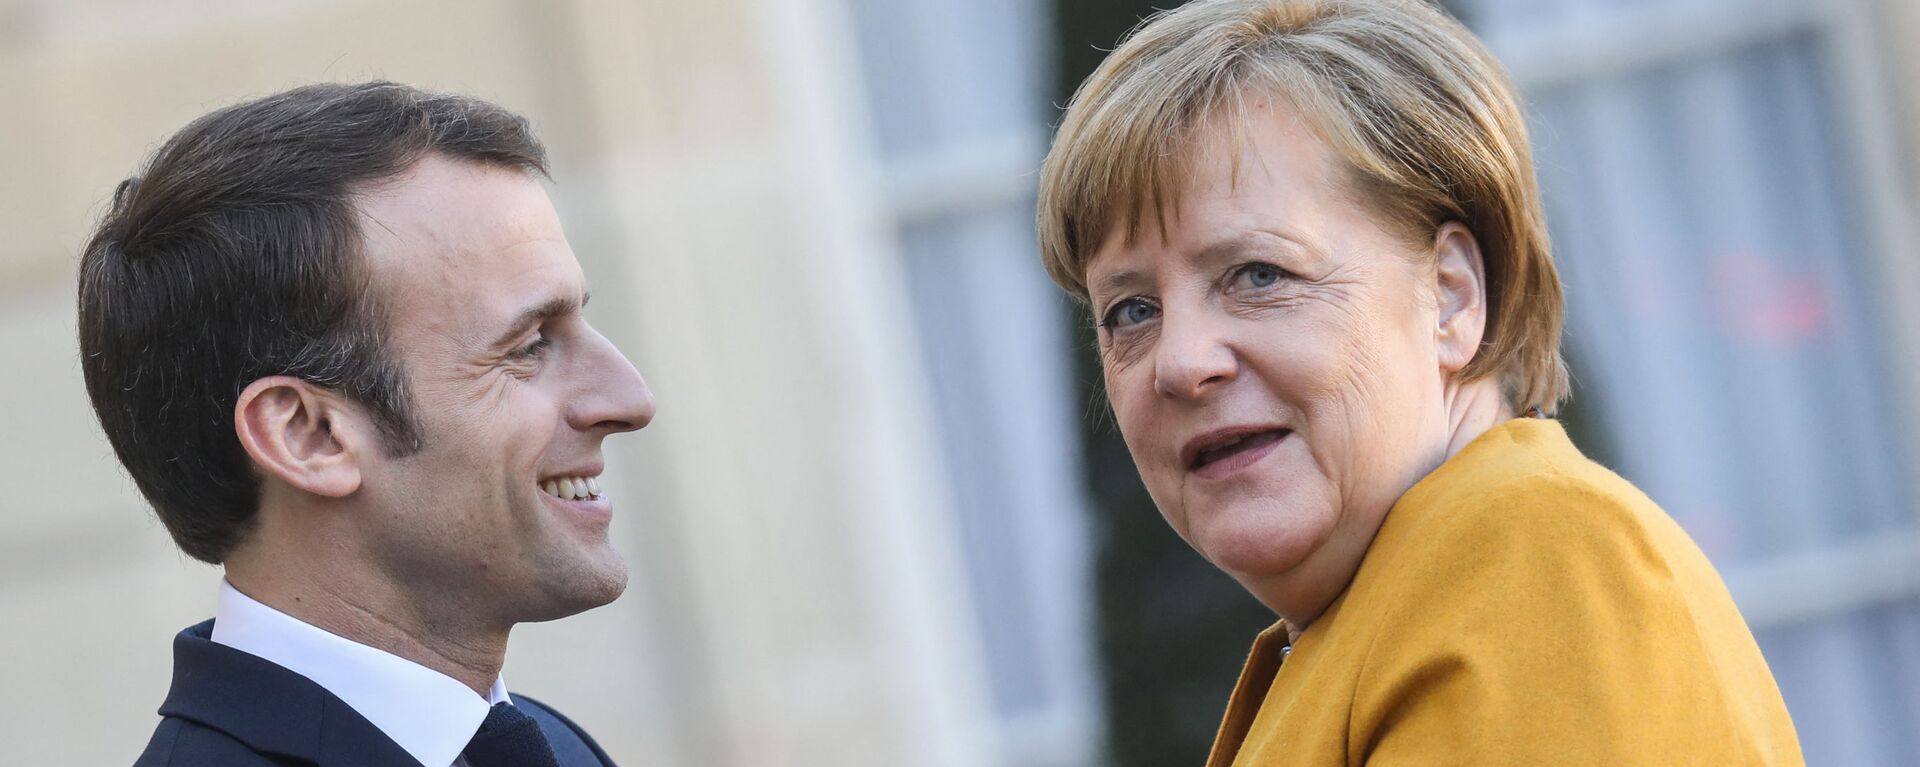 Emmanuel Macron accueille Angela Merkel à l’֤Élysée, 27 février 2019 - Sputnik Afrique, 1920, 25.11.2021